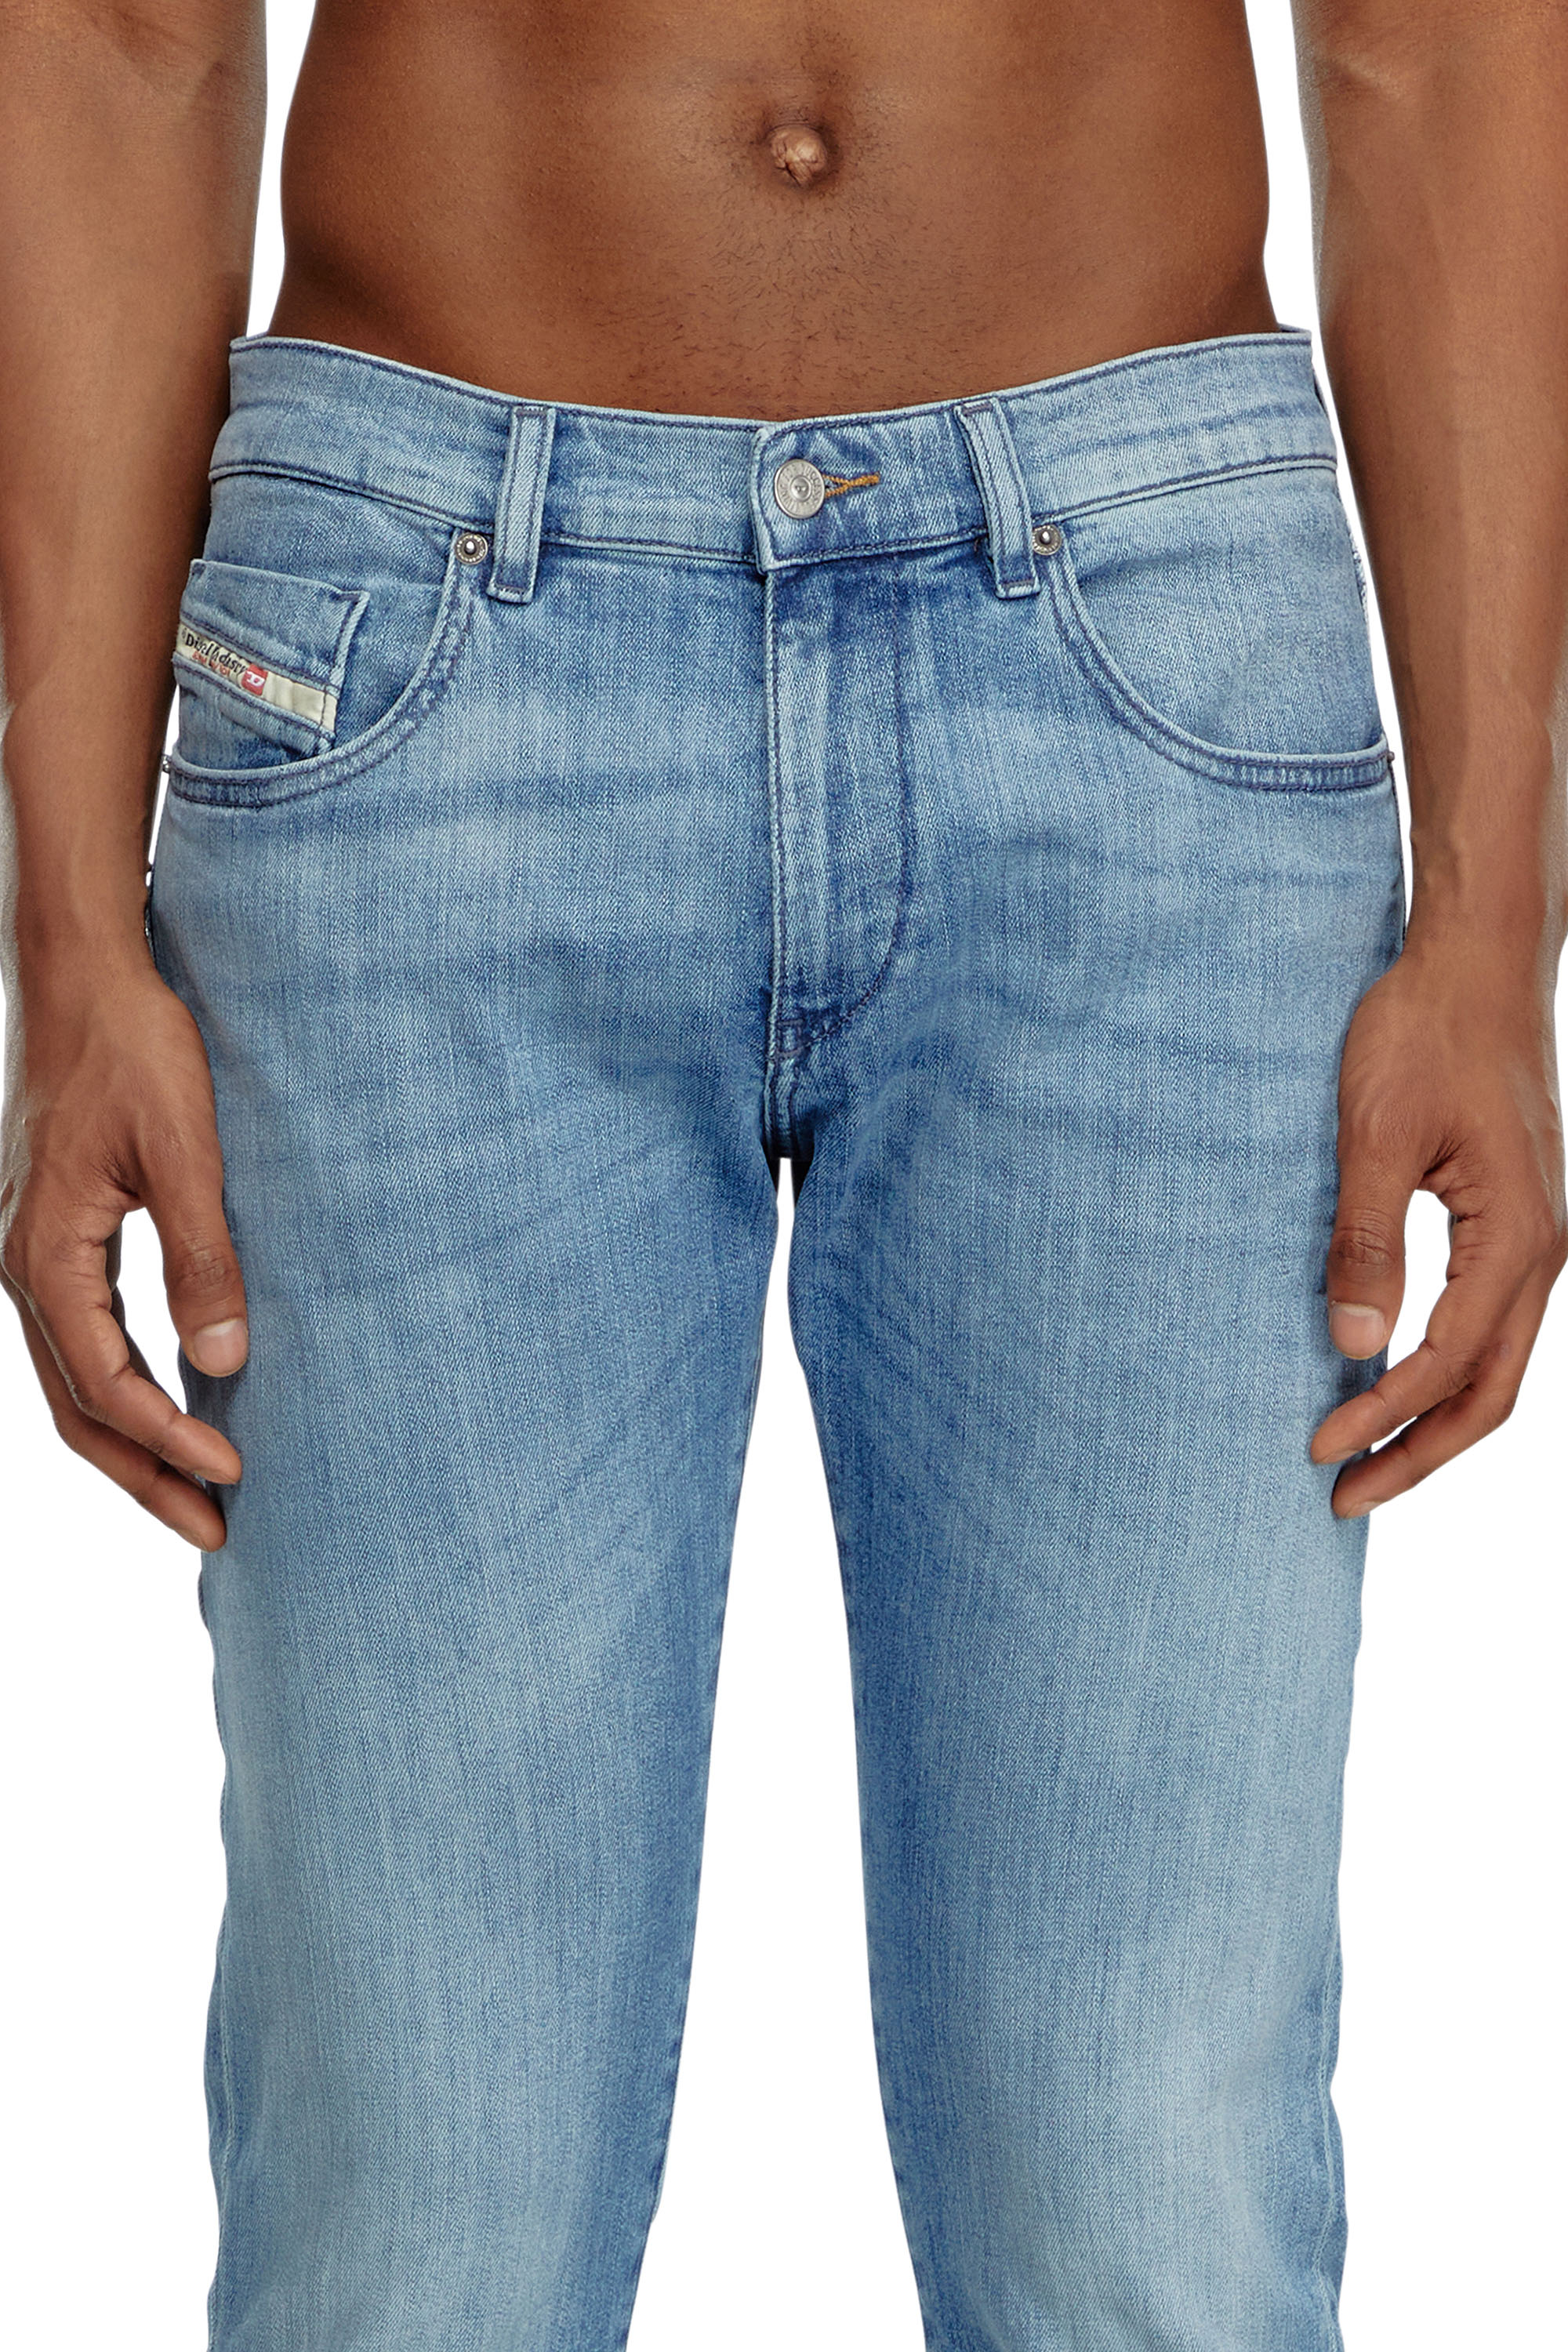 Diesel - Slim Jeans 2019 D-Strukt 0GRDI, Hombre Slim Jeans - 2019 D-Strukt in Azul marino - Image 4